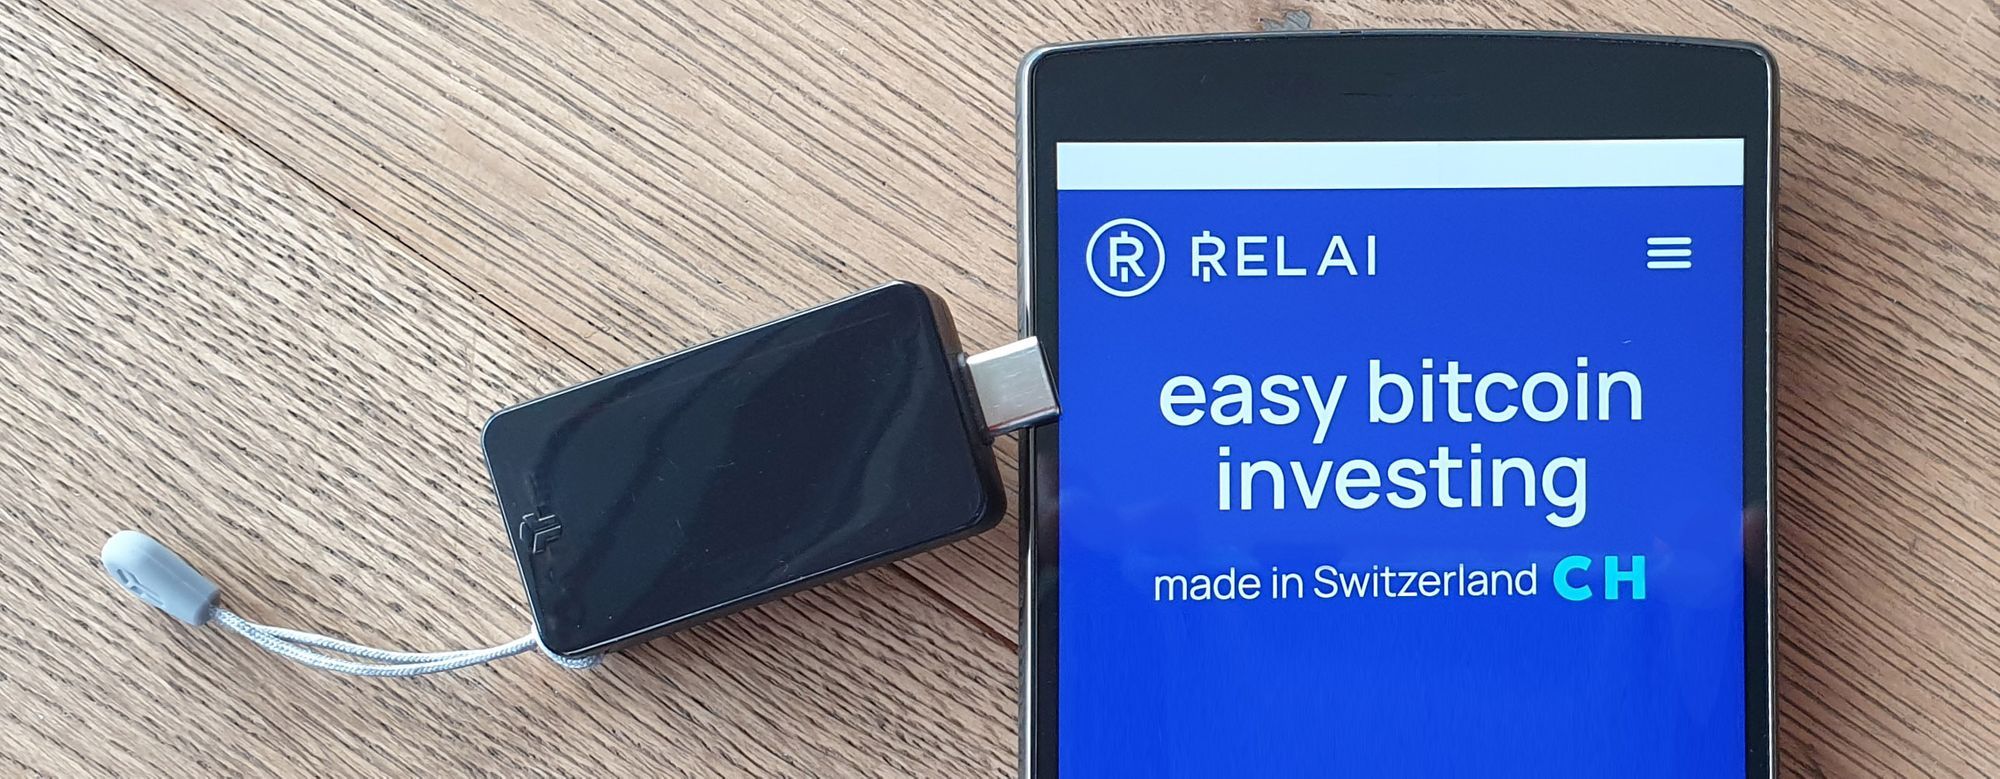 BitBox + Relai: Schweizer Dream-Team zum Bitcoin kaufen